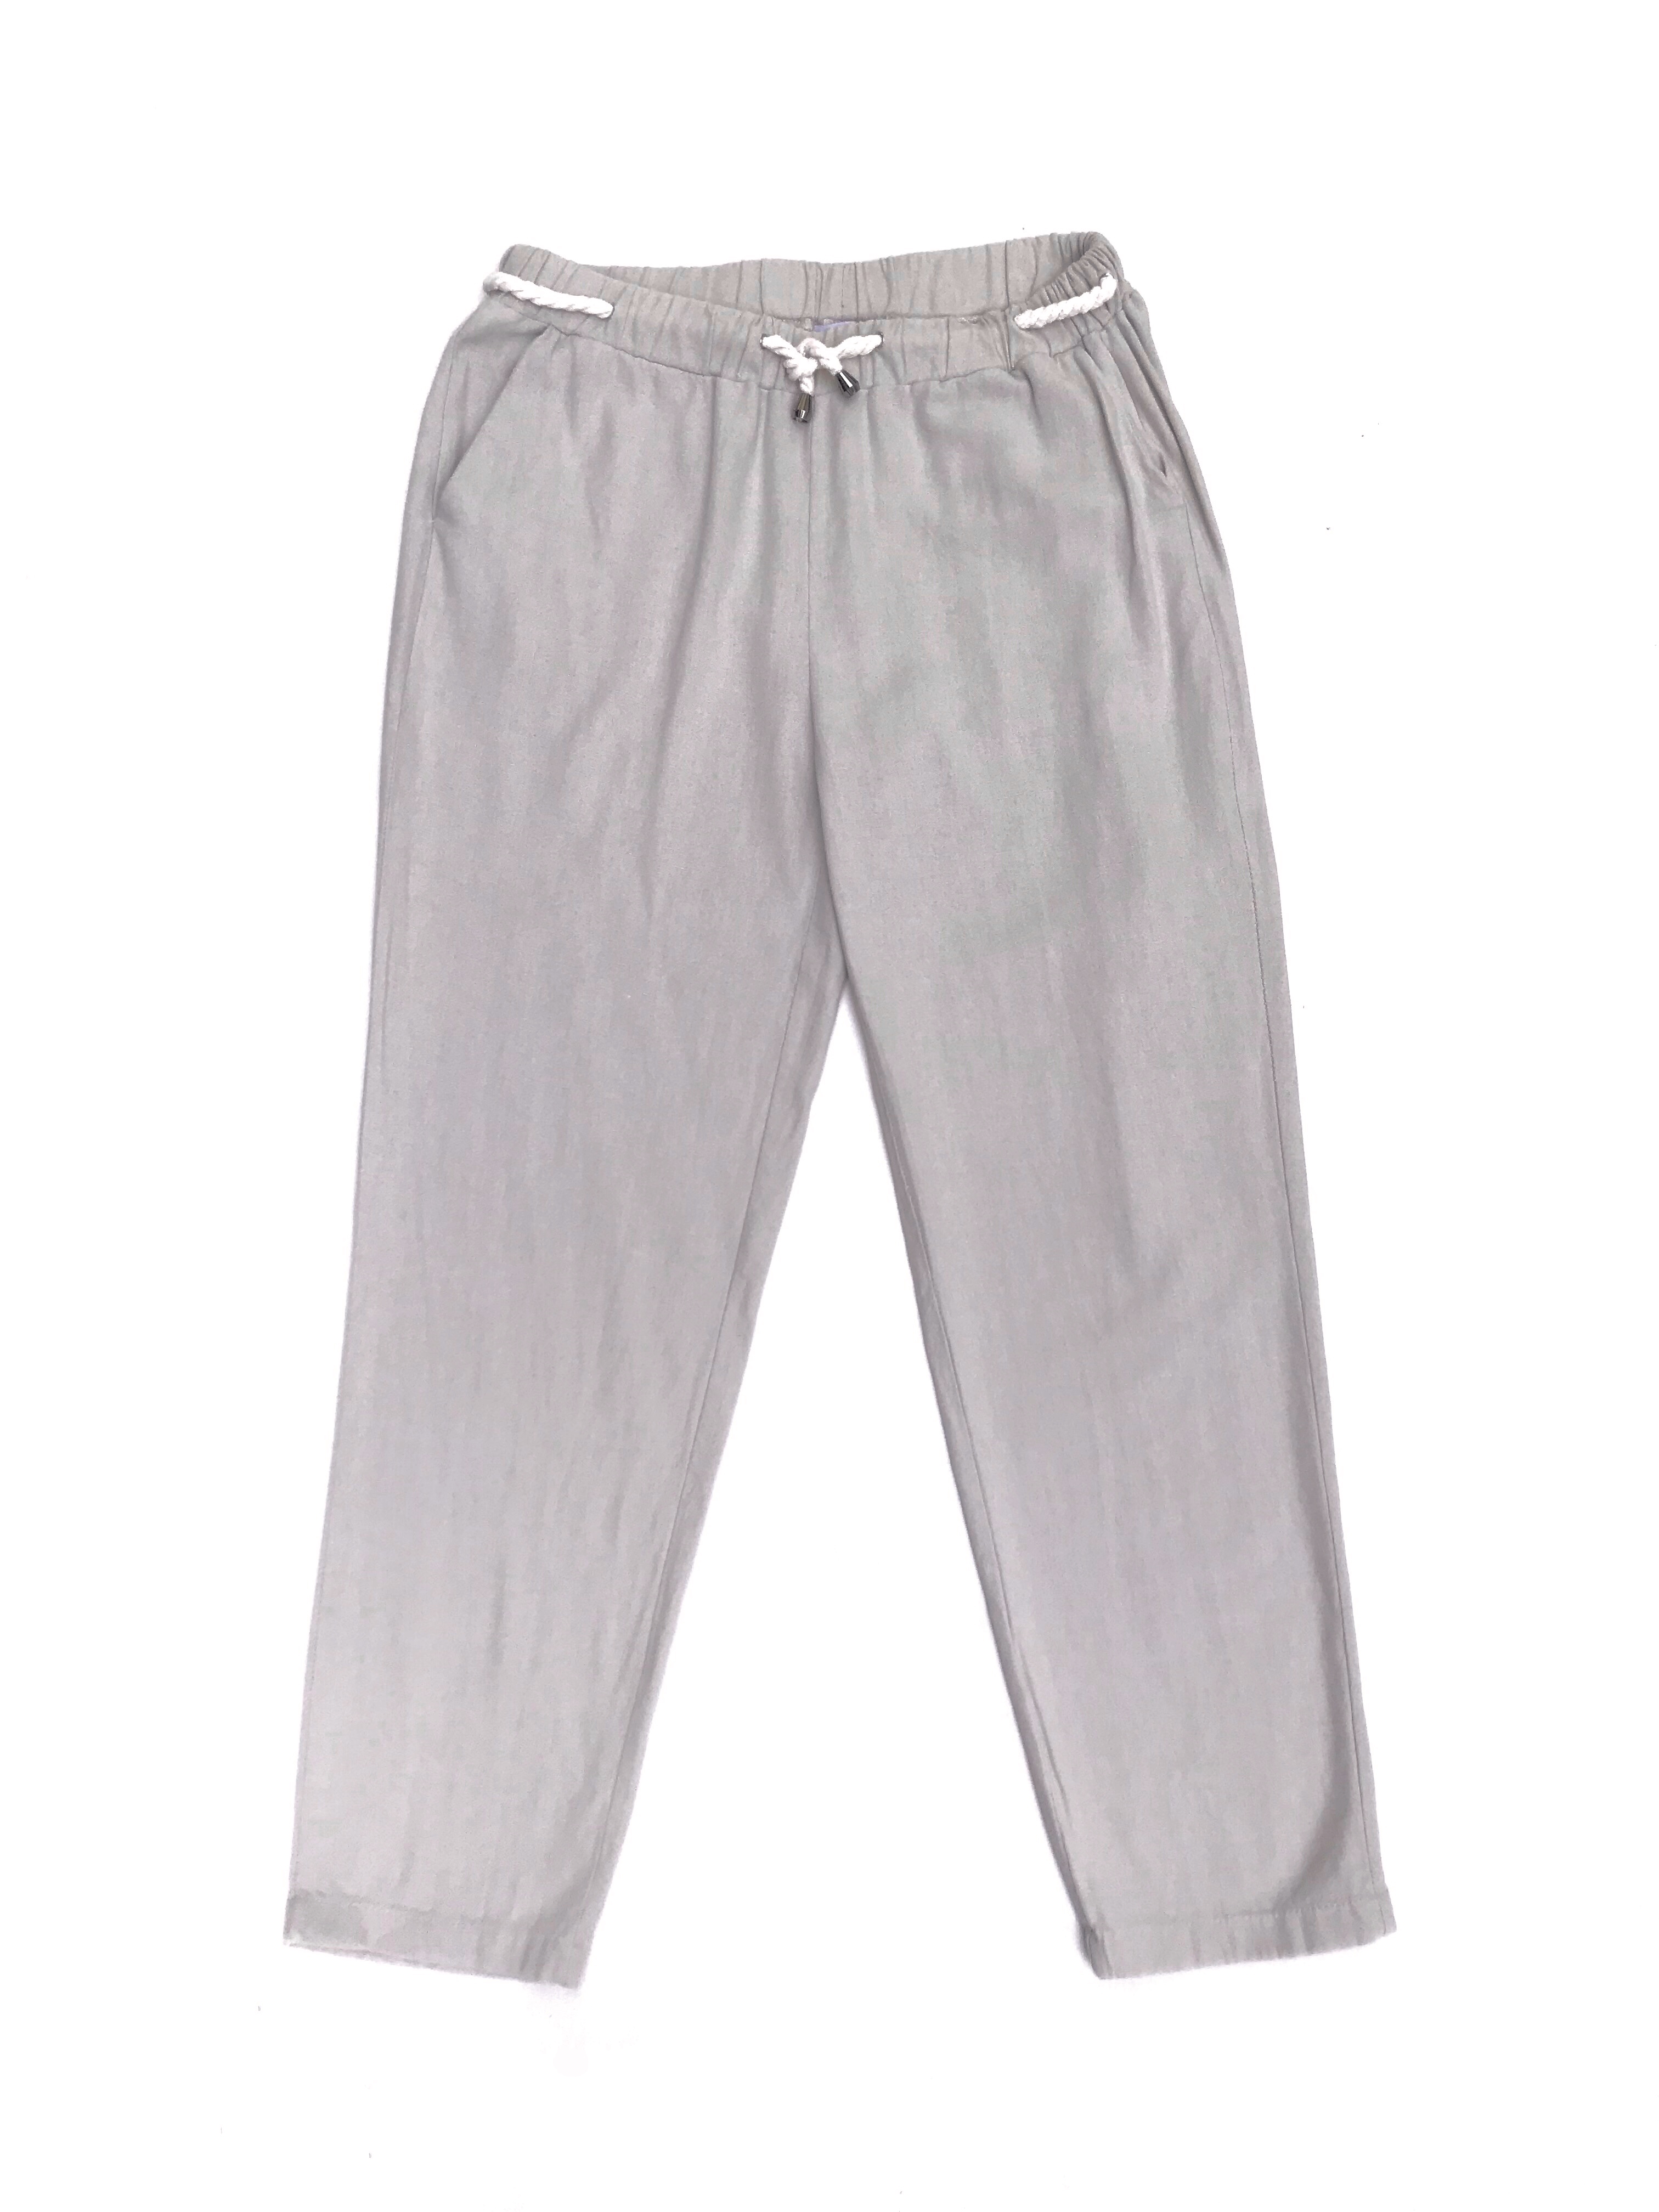 Pantalón Not beige de tela tipo lino con bolsillos laterales, con elástico y cordón en la cintura. Ideal para primavera/verano. Precio original S/ 129